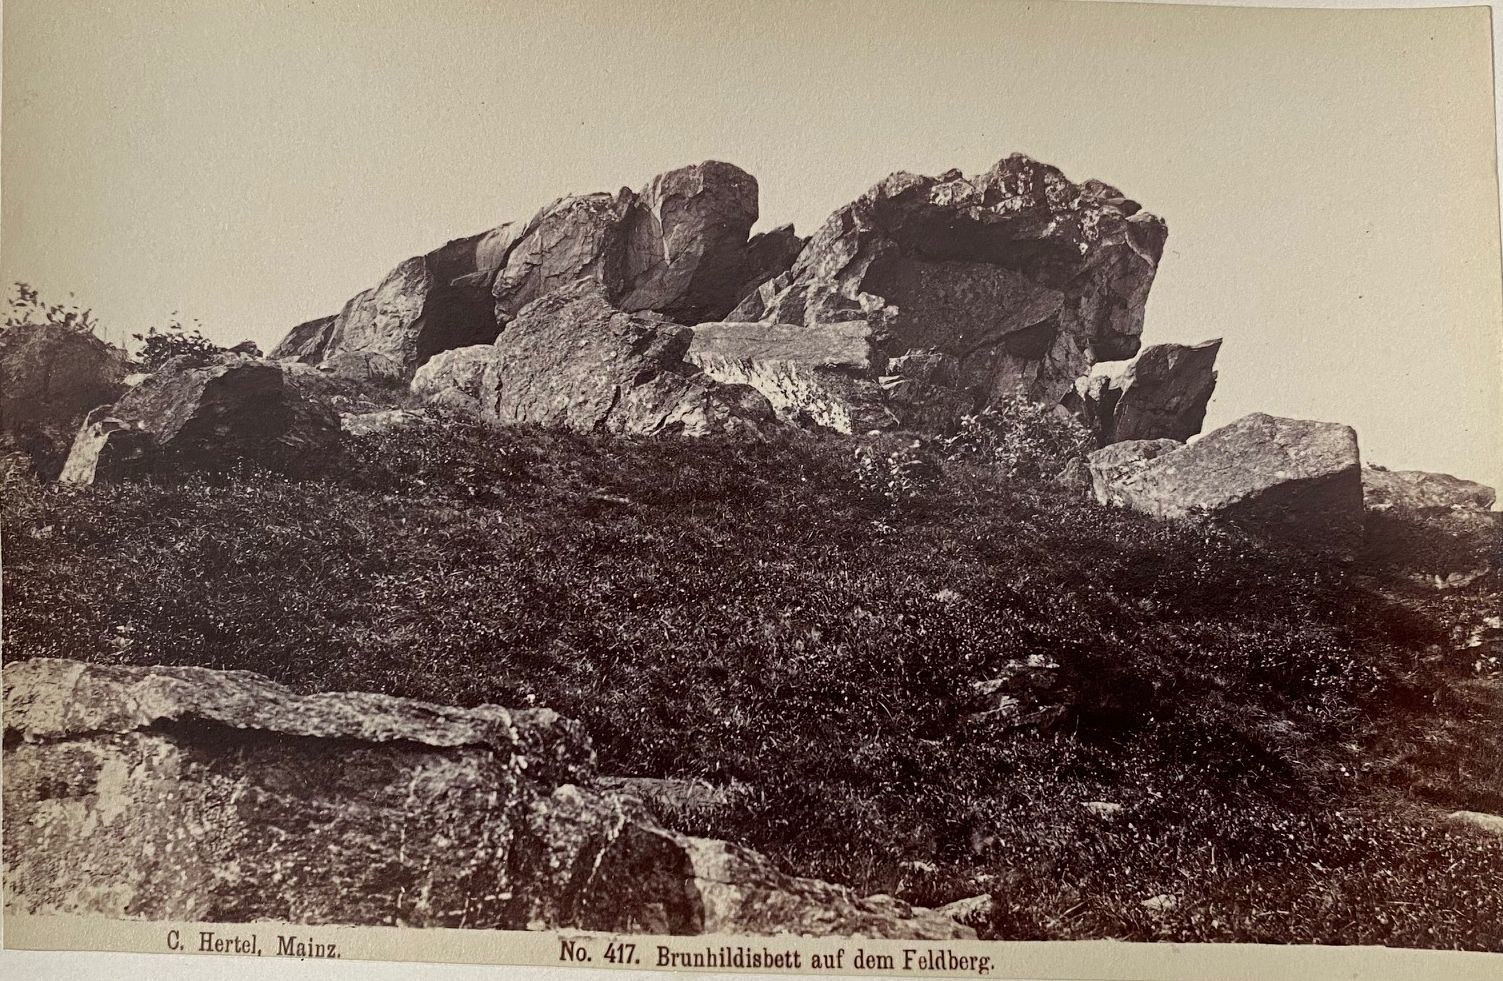 Fotografie, Carl Hertel No. 417, Brunhildisbett auf dem Feldberg, ca. 1885 (Taunus-Rhein-Main - Regionalgeschichtliche Sammlung Dr. Stefan Naas CC BY-NC-SA)